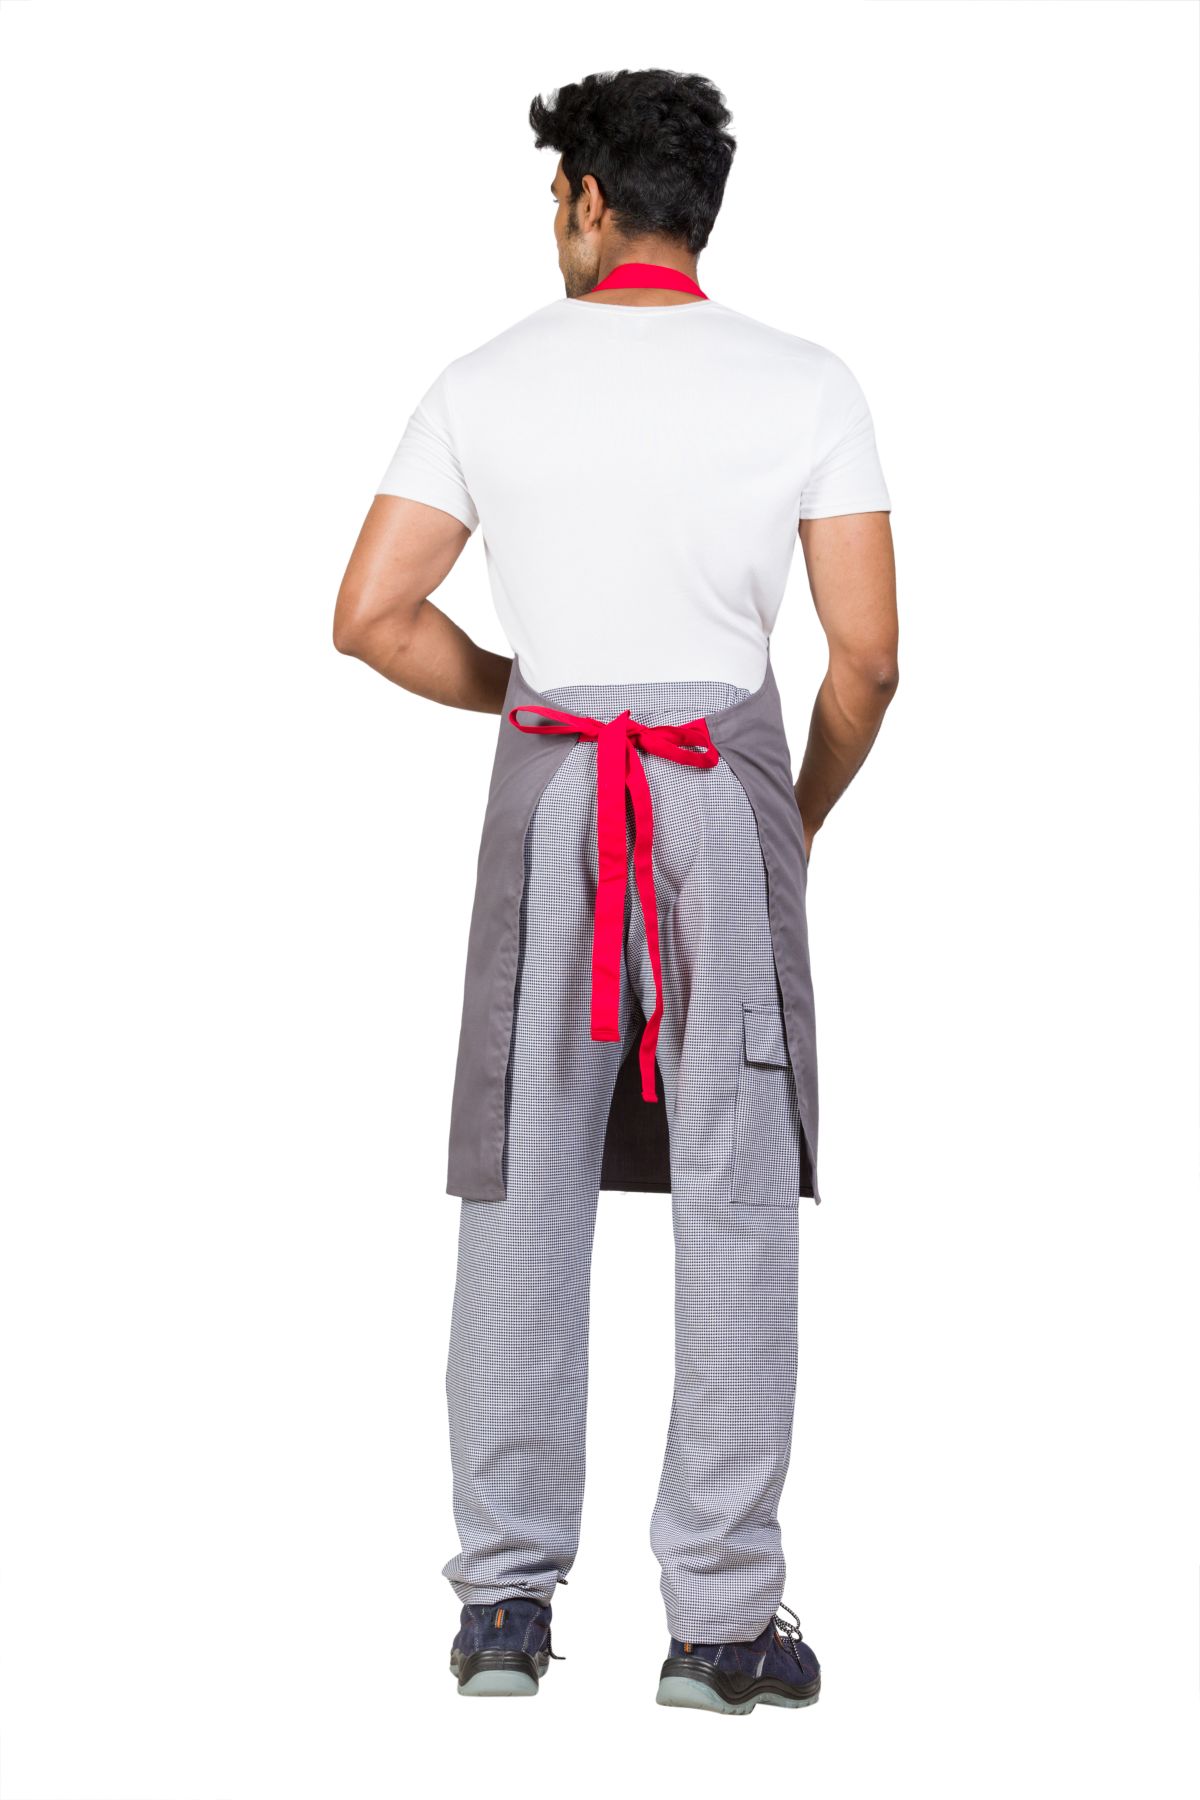 Cotton Blend Easy Fit Adjustable Ergonomic Front Pocket Grey-Red Full Apron